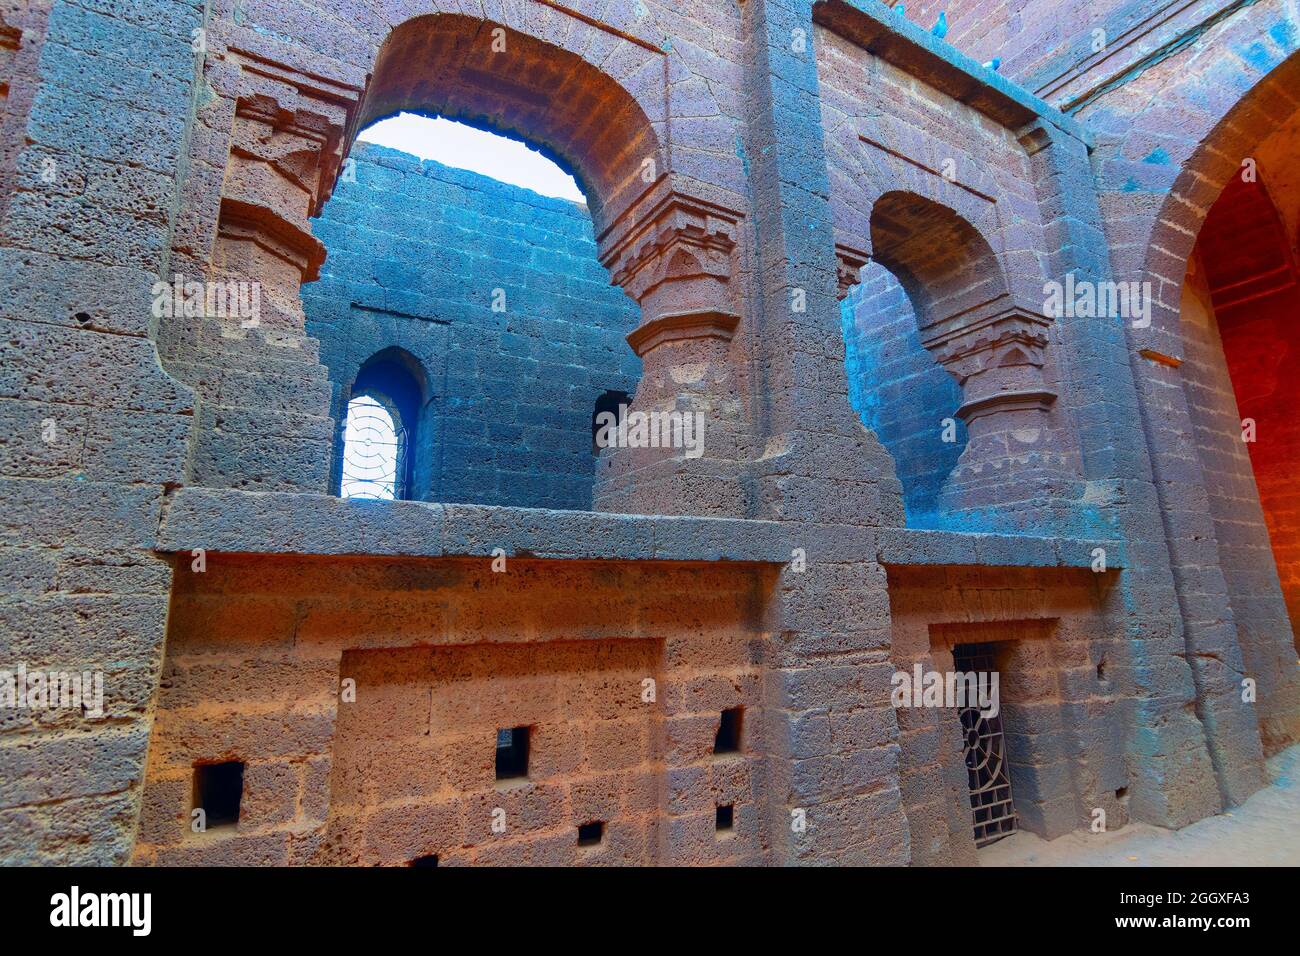 Bögen des großen Tores - ein feines gewölbtes Tor, im Volksmund bekannt als Pathar darwaja, wird mit gekleideten Lateritblöcken gemacht. Es ist ein berühmter Touristenort Stockfoto